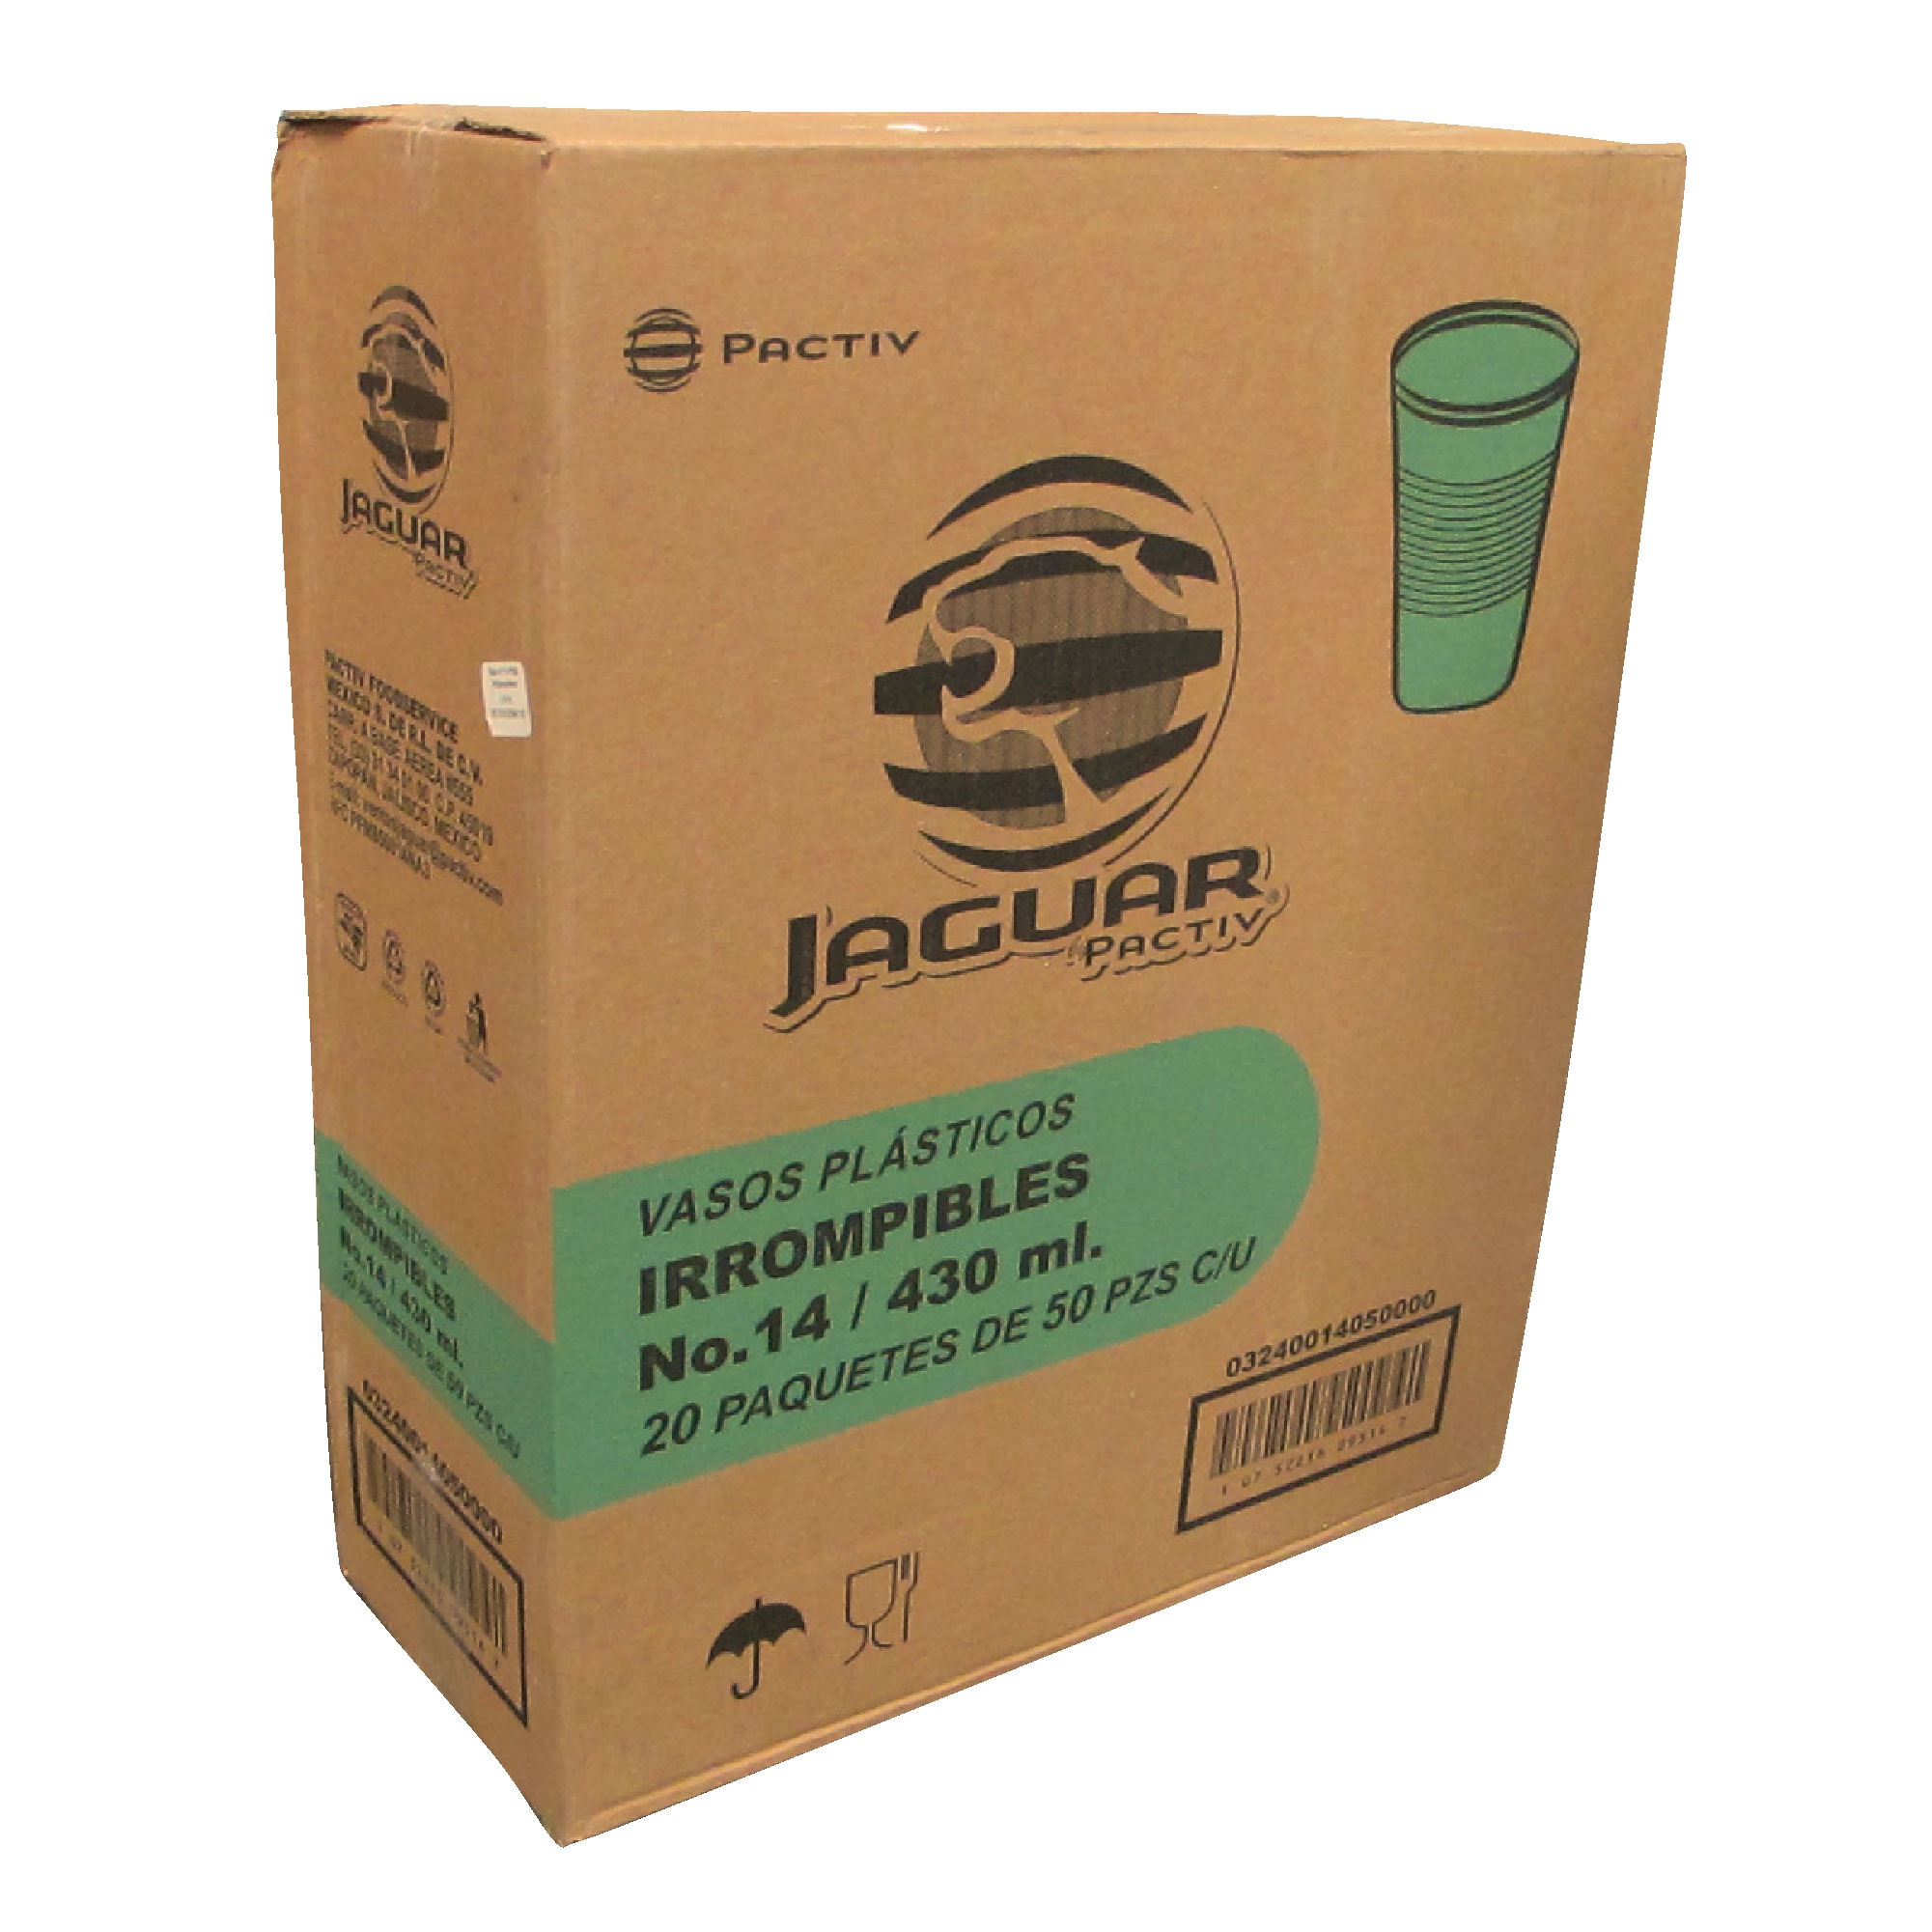 Jaguar vaso plástico irrompible con capacidad para 14 oz, caja con 1000 piezas en 20 paquetes